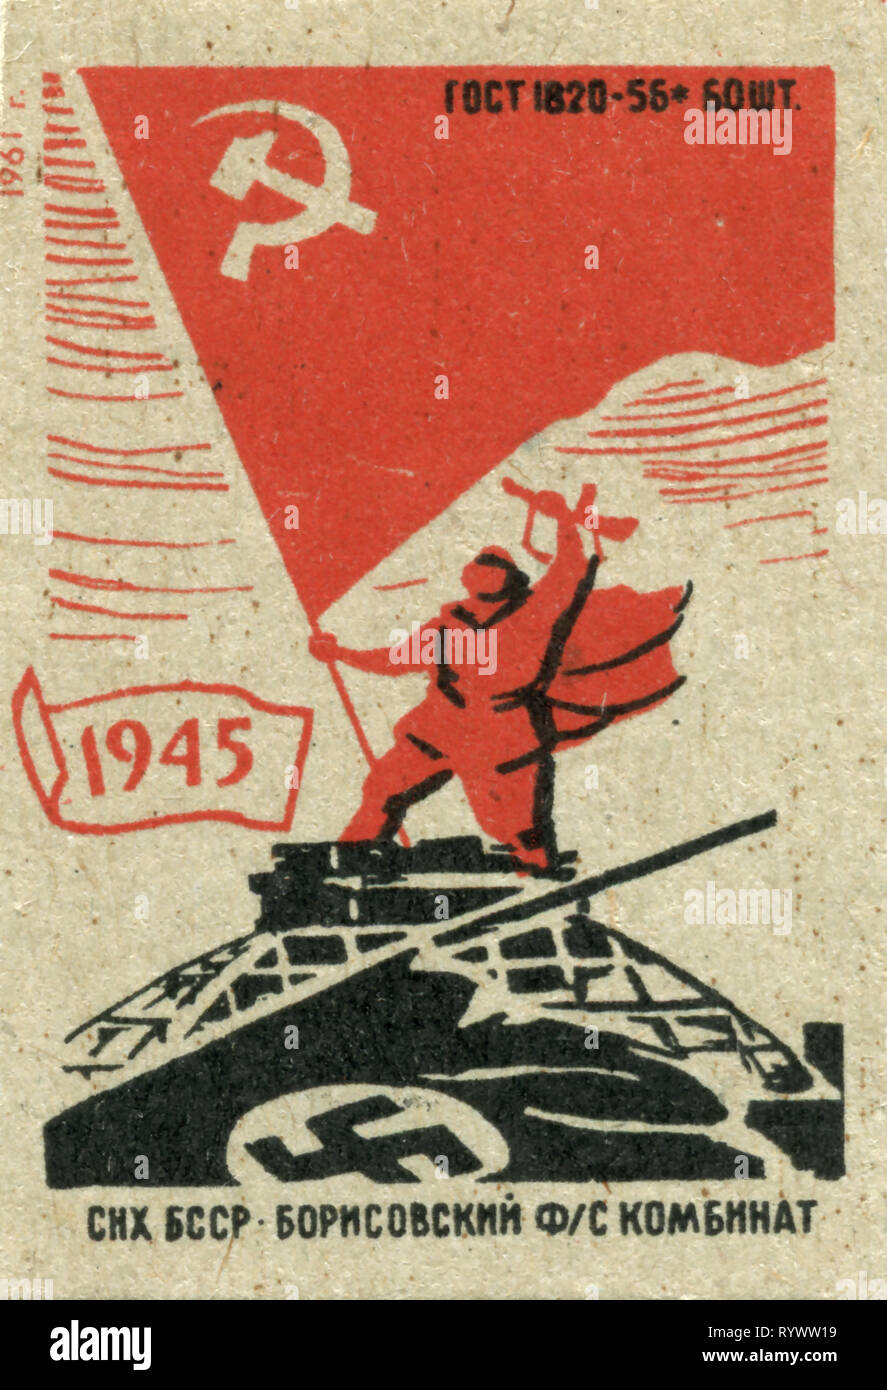 Russia, Unione Sovietica - 1961: matchbox graphics collection, propaganda dell'URSS che celebra la vittoria sulla Germania nazista il 9 1945 maggio Foto Stock